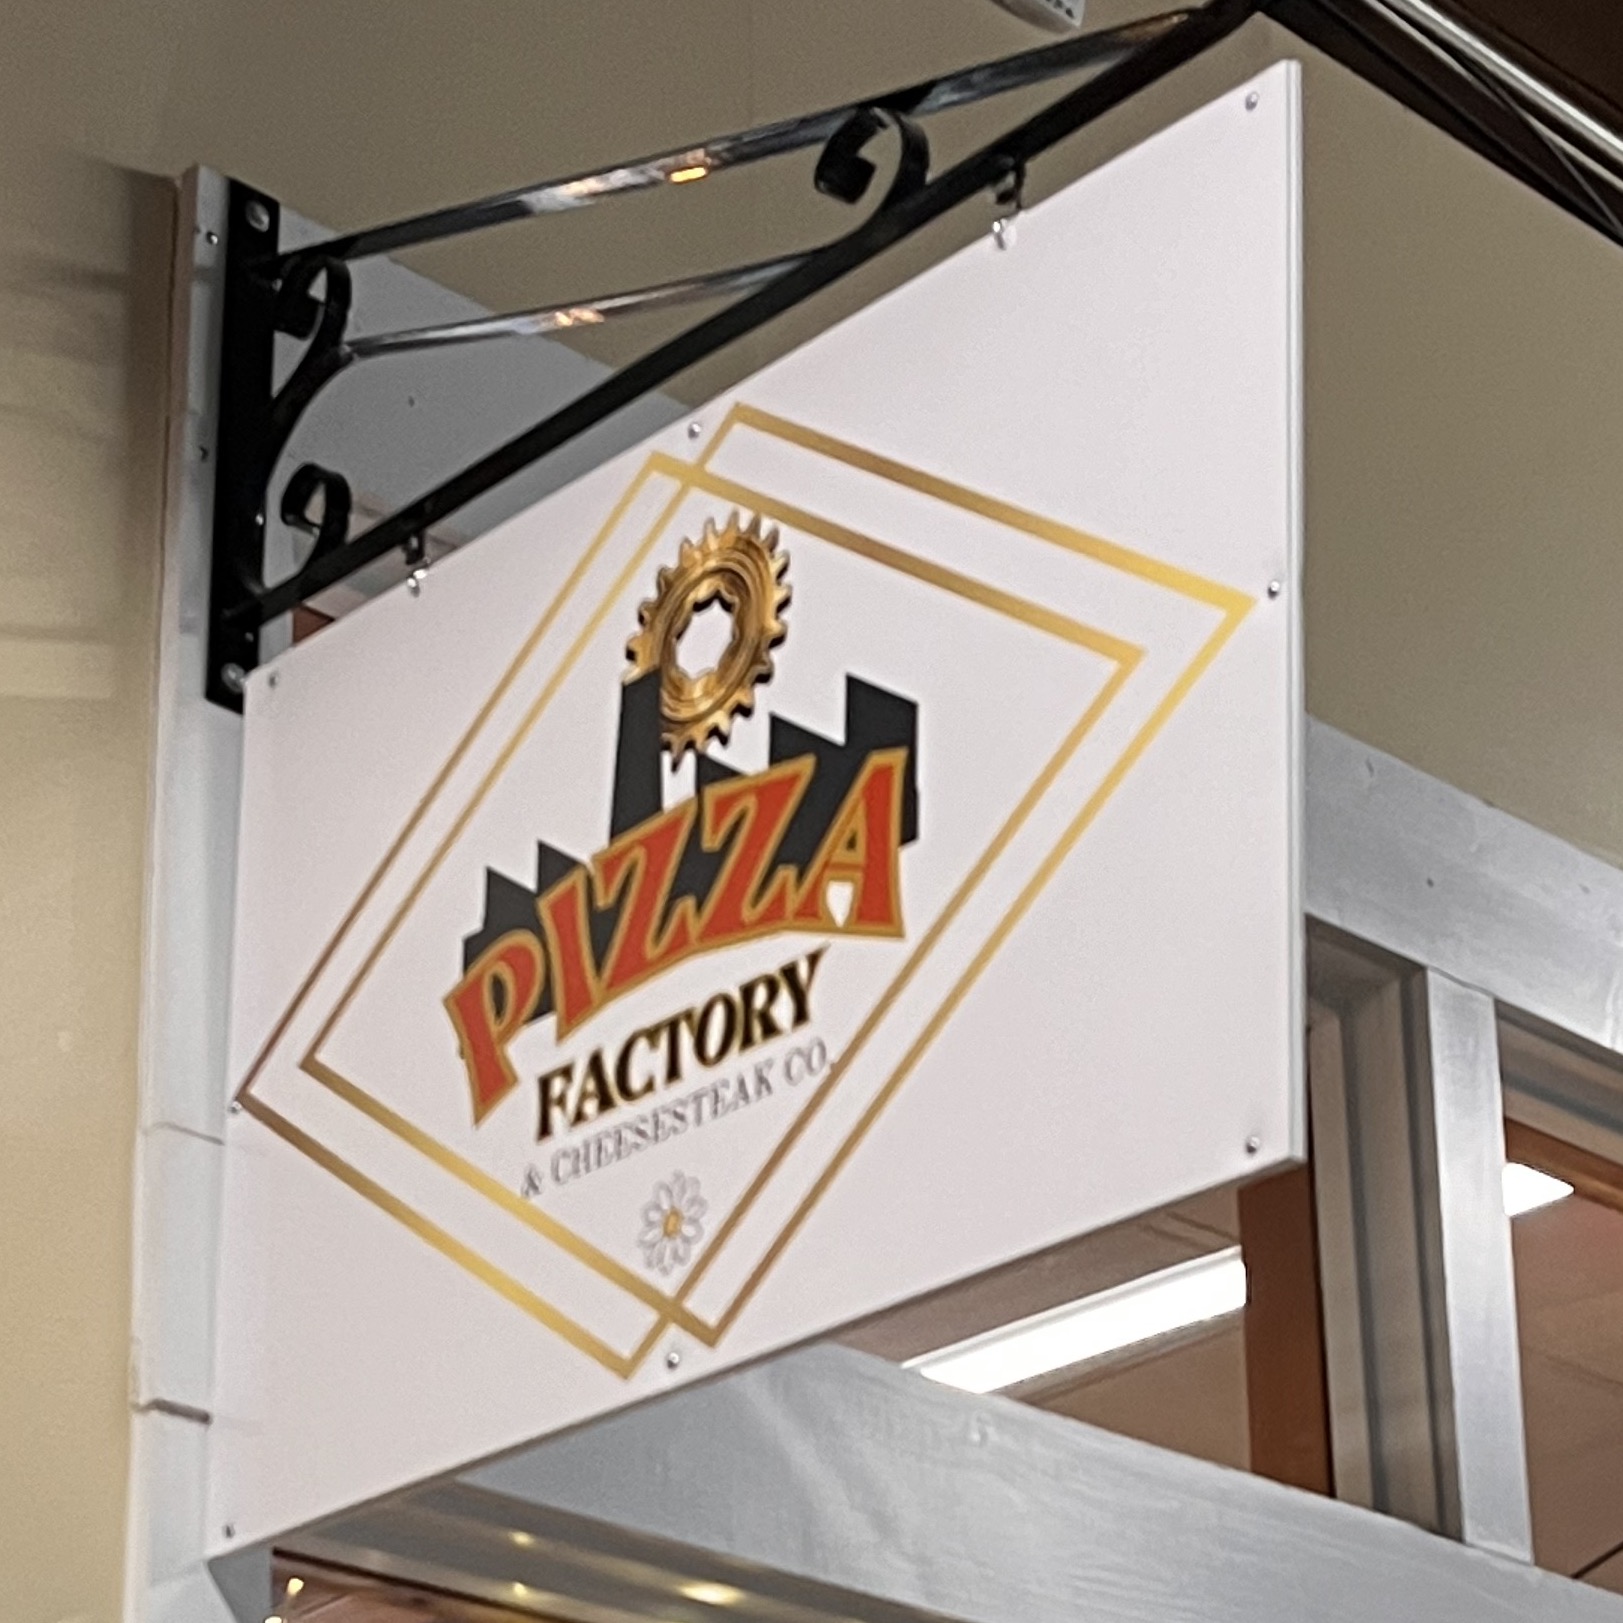 Pizza factory sign above door